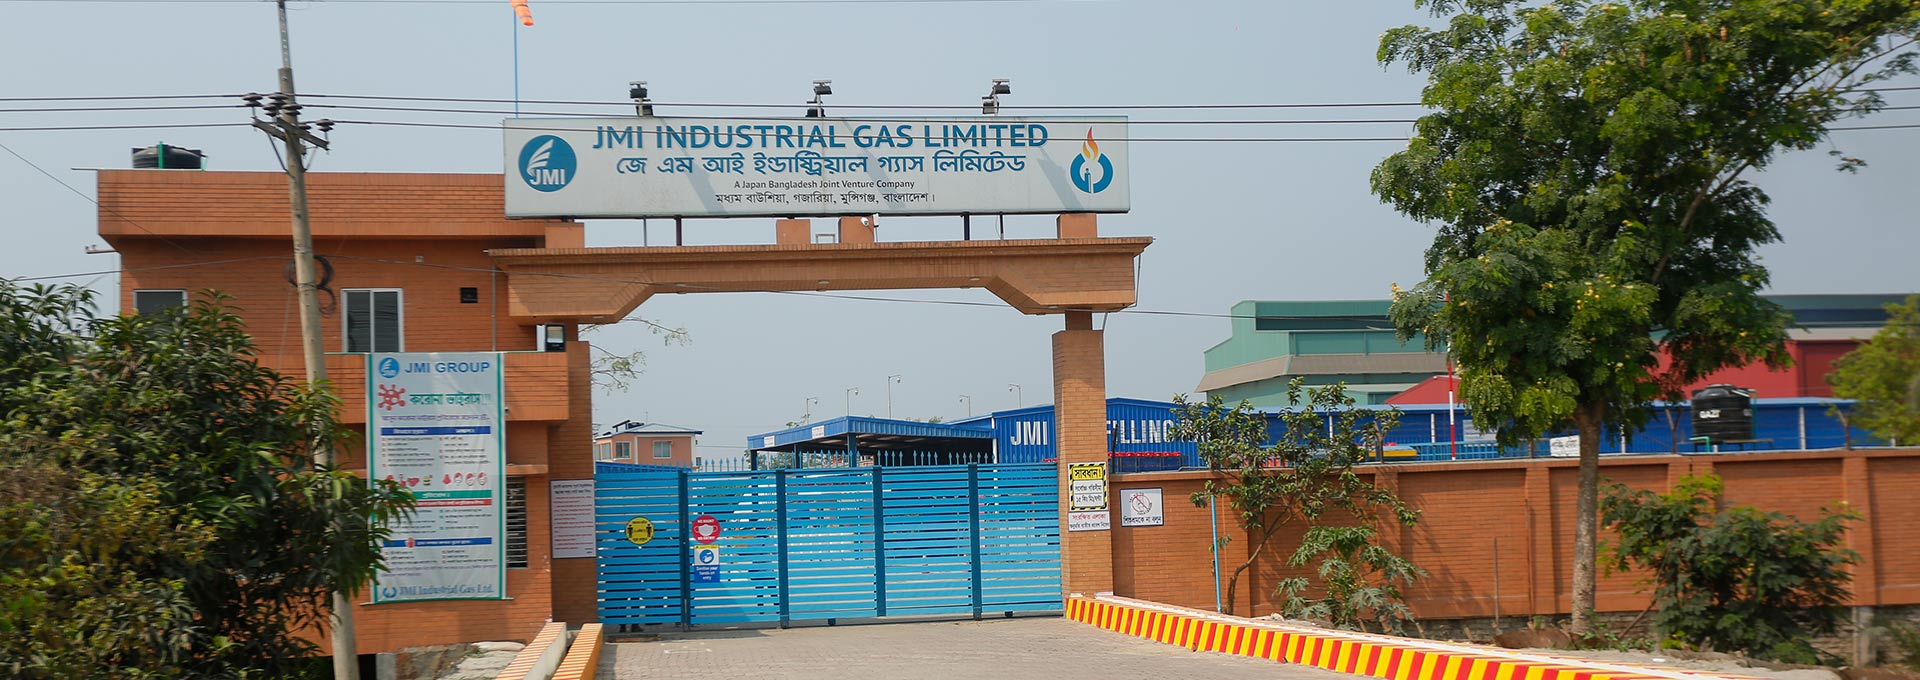 JMI Industrial Gas Ltd.